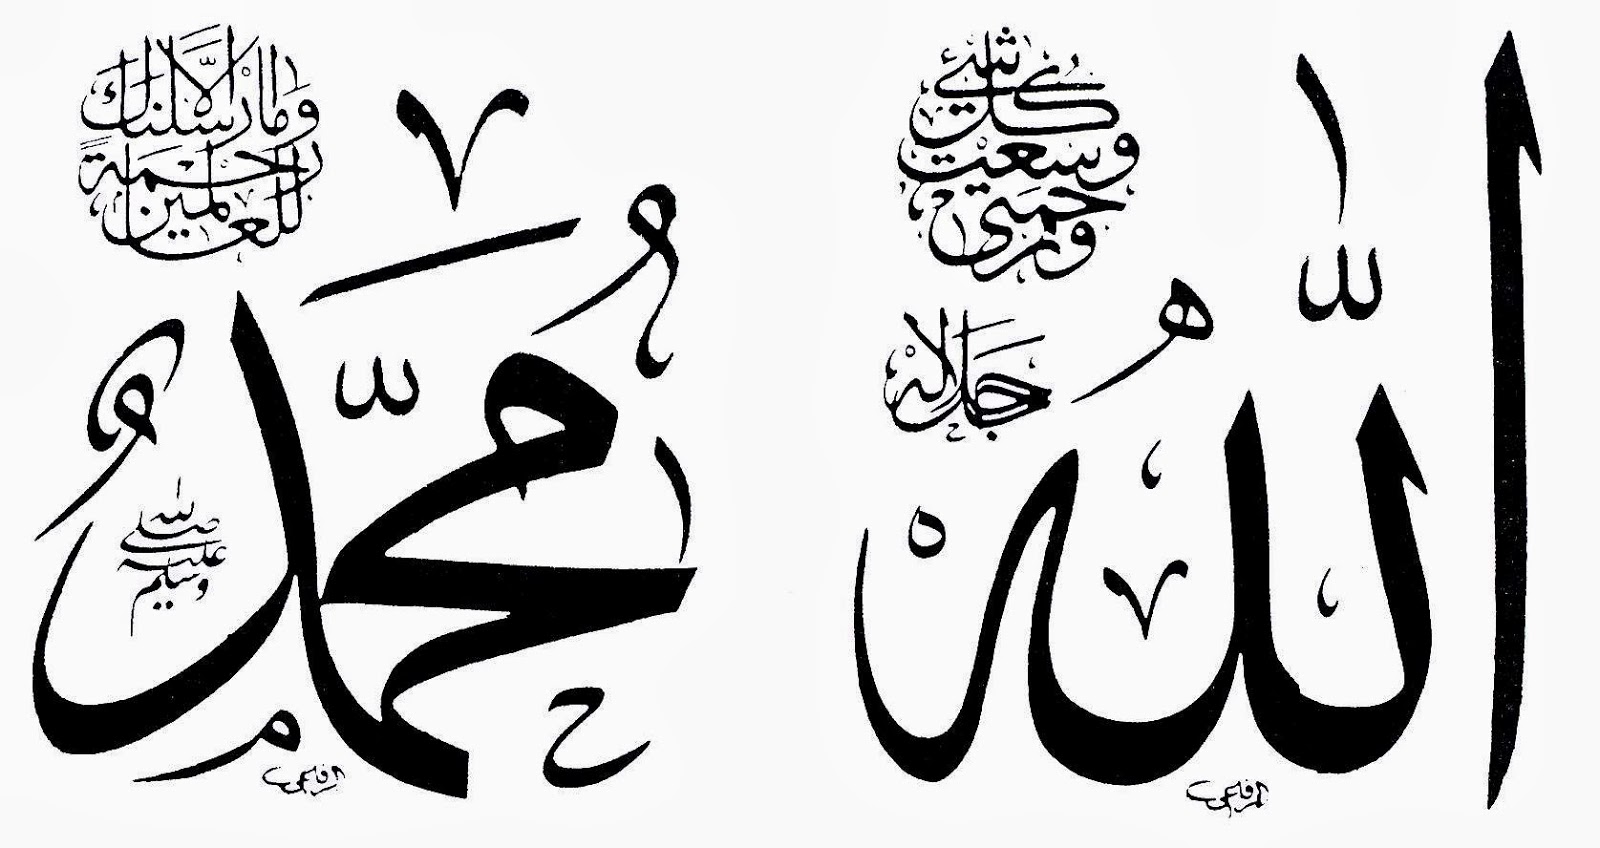 Image result for ‫كلمة محمد رسول الله بالخط العربي‬‎